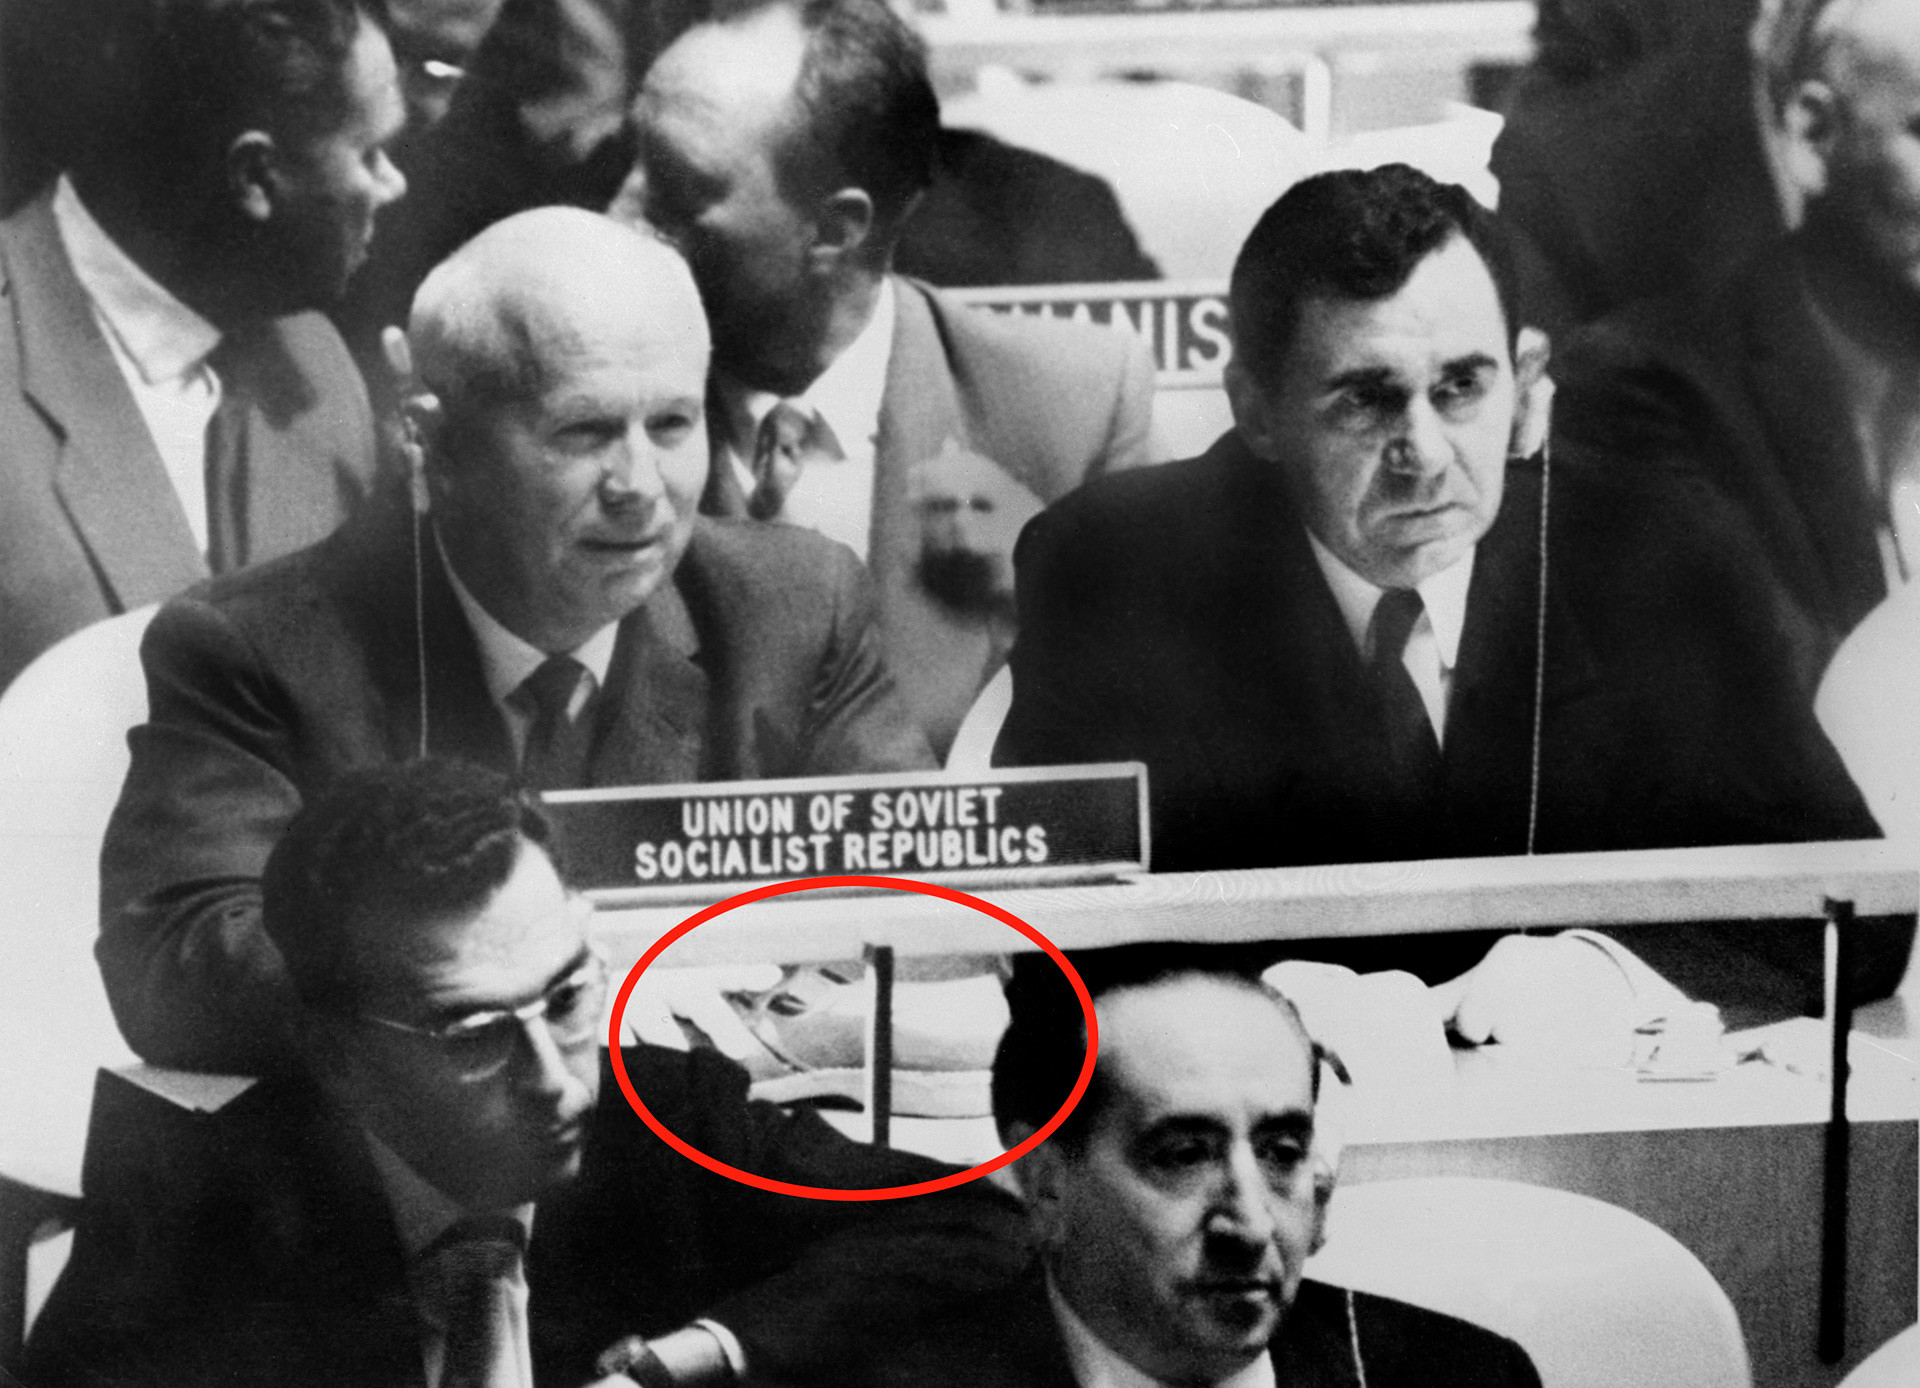 La foto verdadera de Nikita Jrushchov y el ministro de Asuntos Exteriores, Andréi Gromiko, durante la Asamblea General de la ONU, el 12 de octubre de 1960. El círculo rojo marca el zapato en la mesa de Jrushchov.